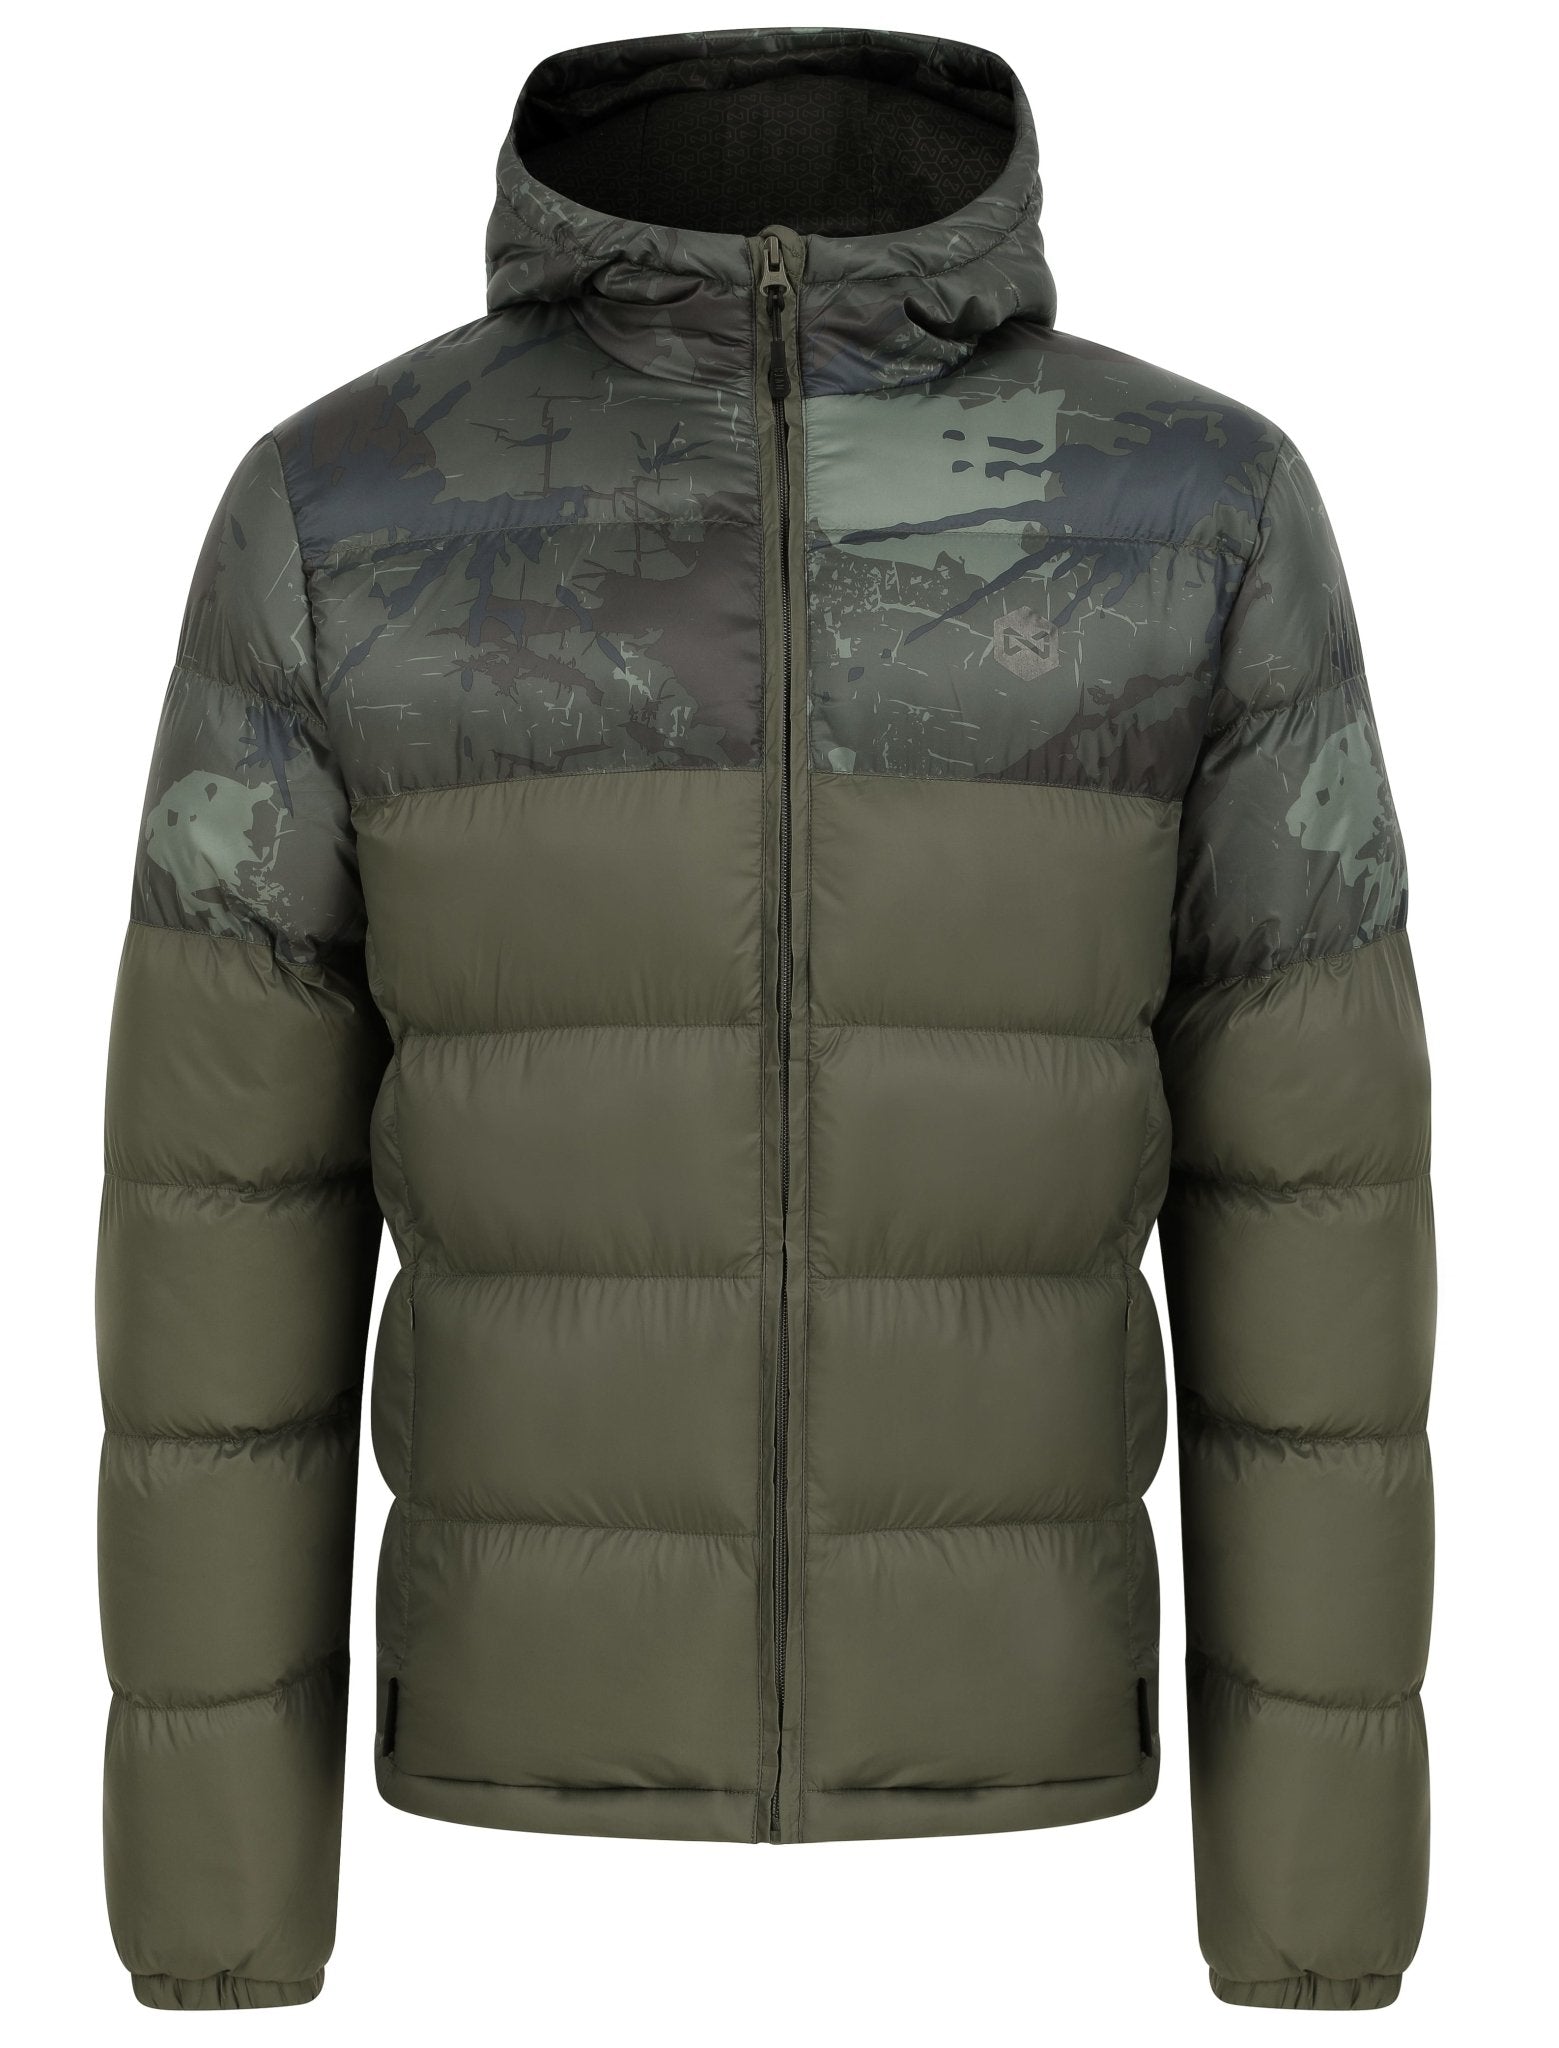 Tetra Camo Puffer Jacket, Men's Fishing Coat